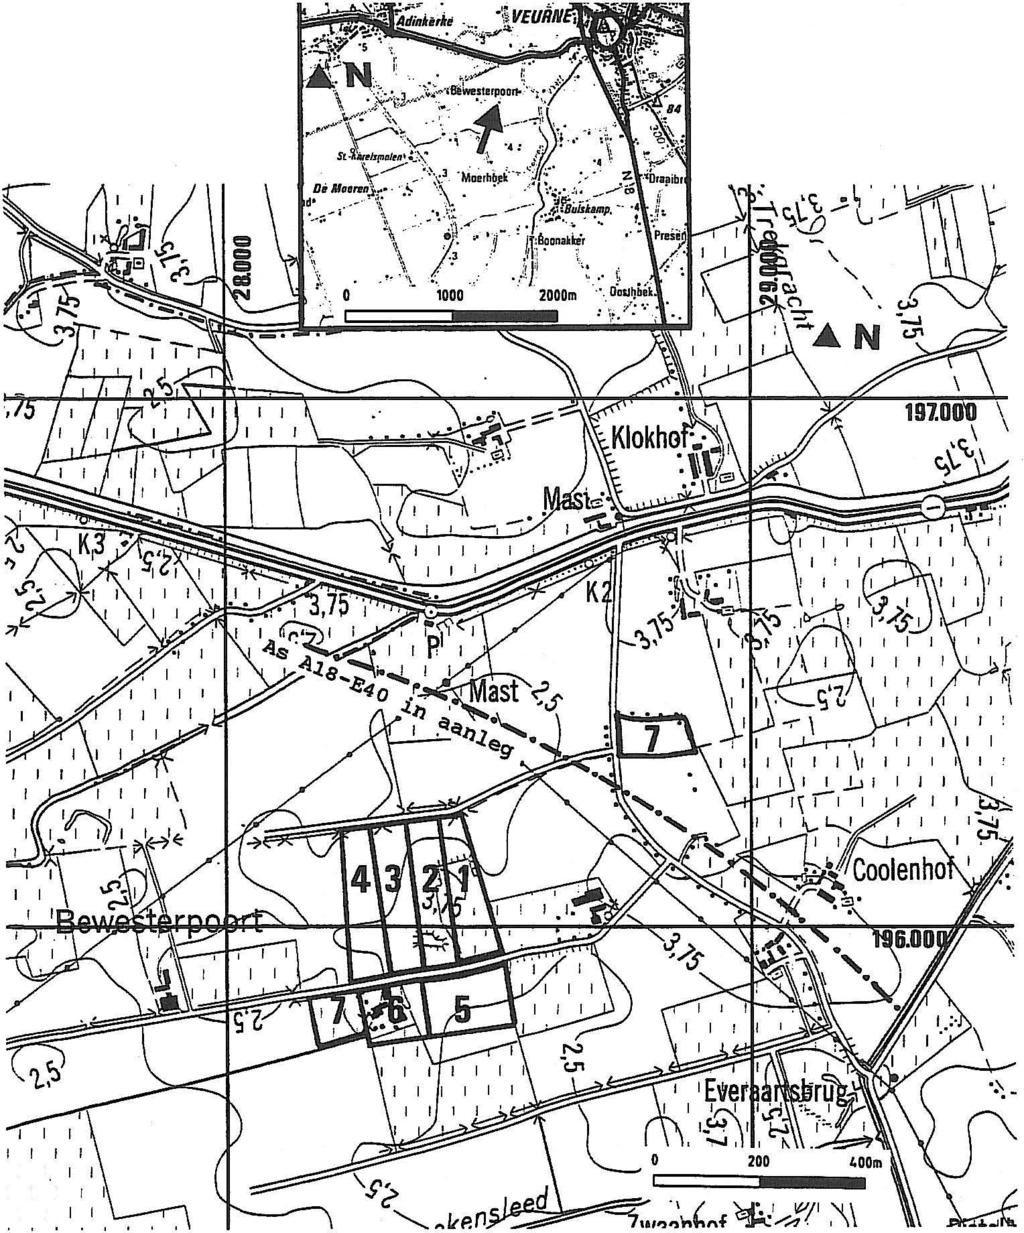 I I I I l I I Fig. 1 Algemene ligging, lotindeling en topografie volgens de kaart van het N.G.I. op schaal 1110.000 editie 1978.